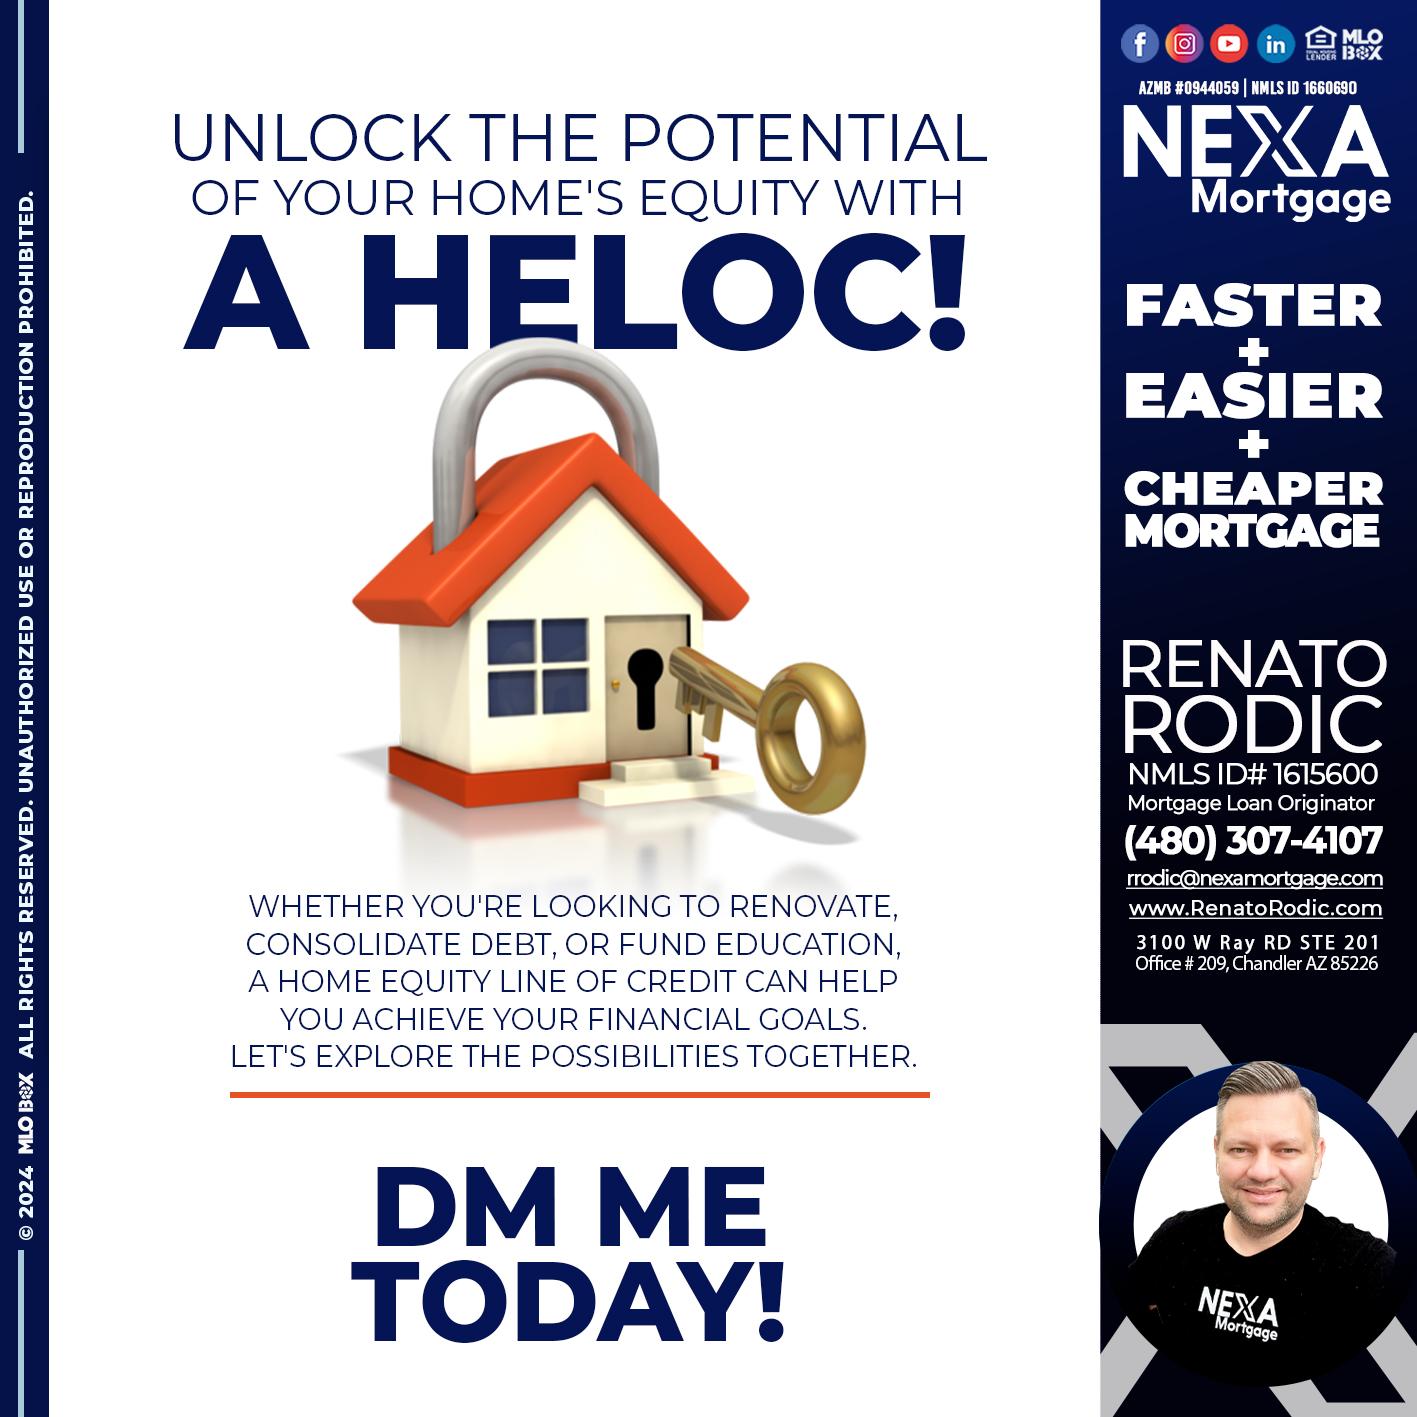 HELOC - Renato Rodic -Mortgage Loan Originator